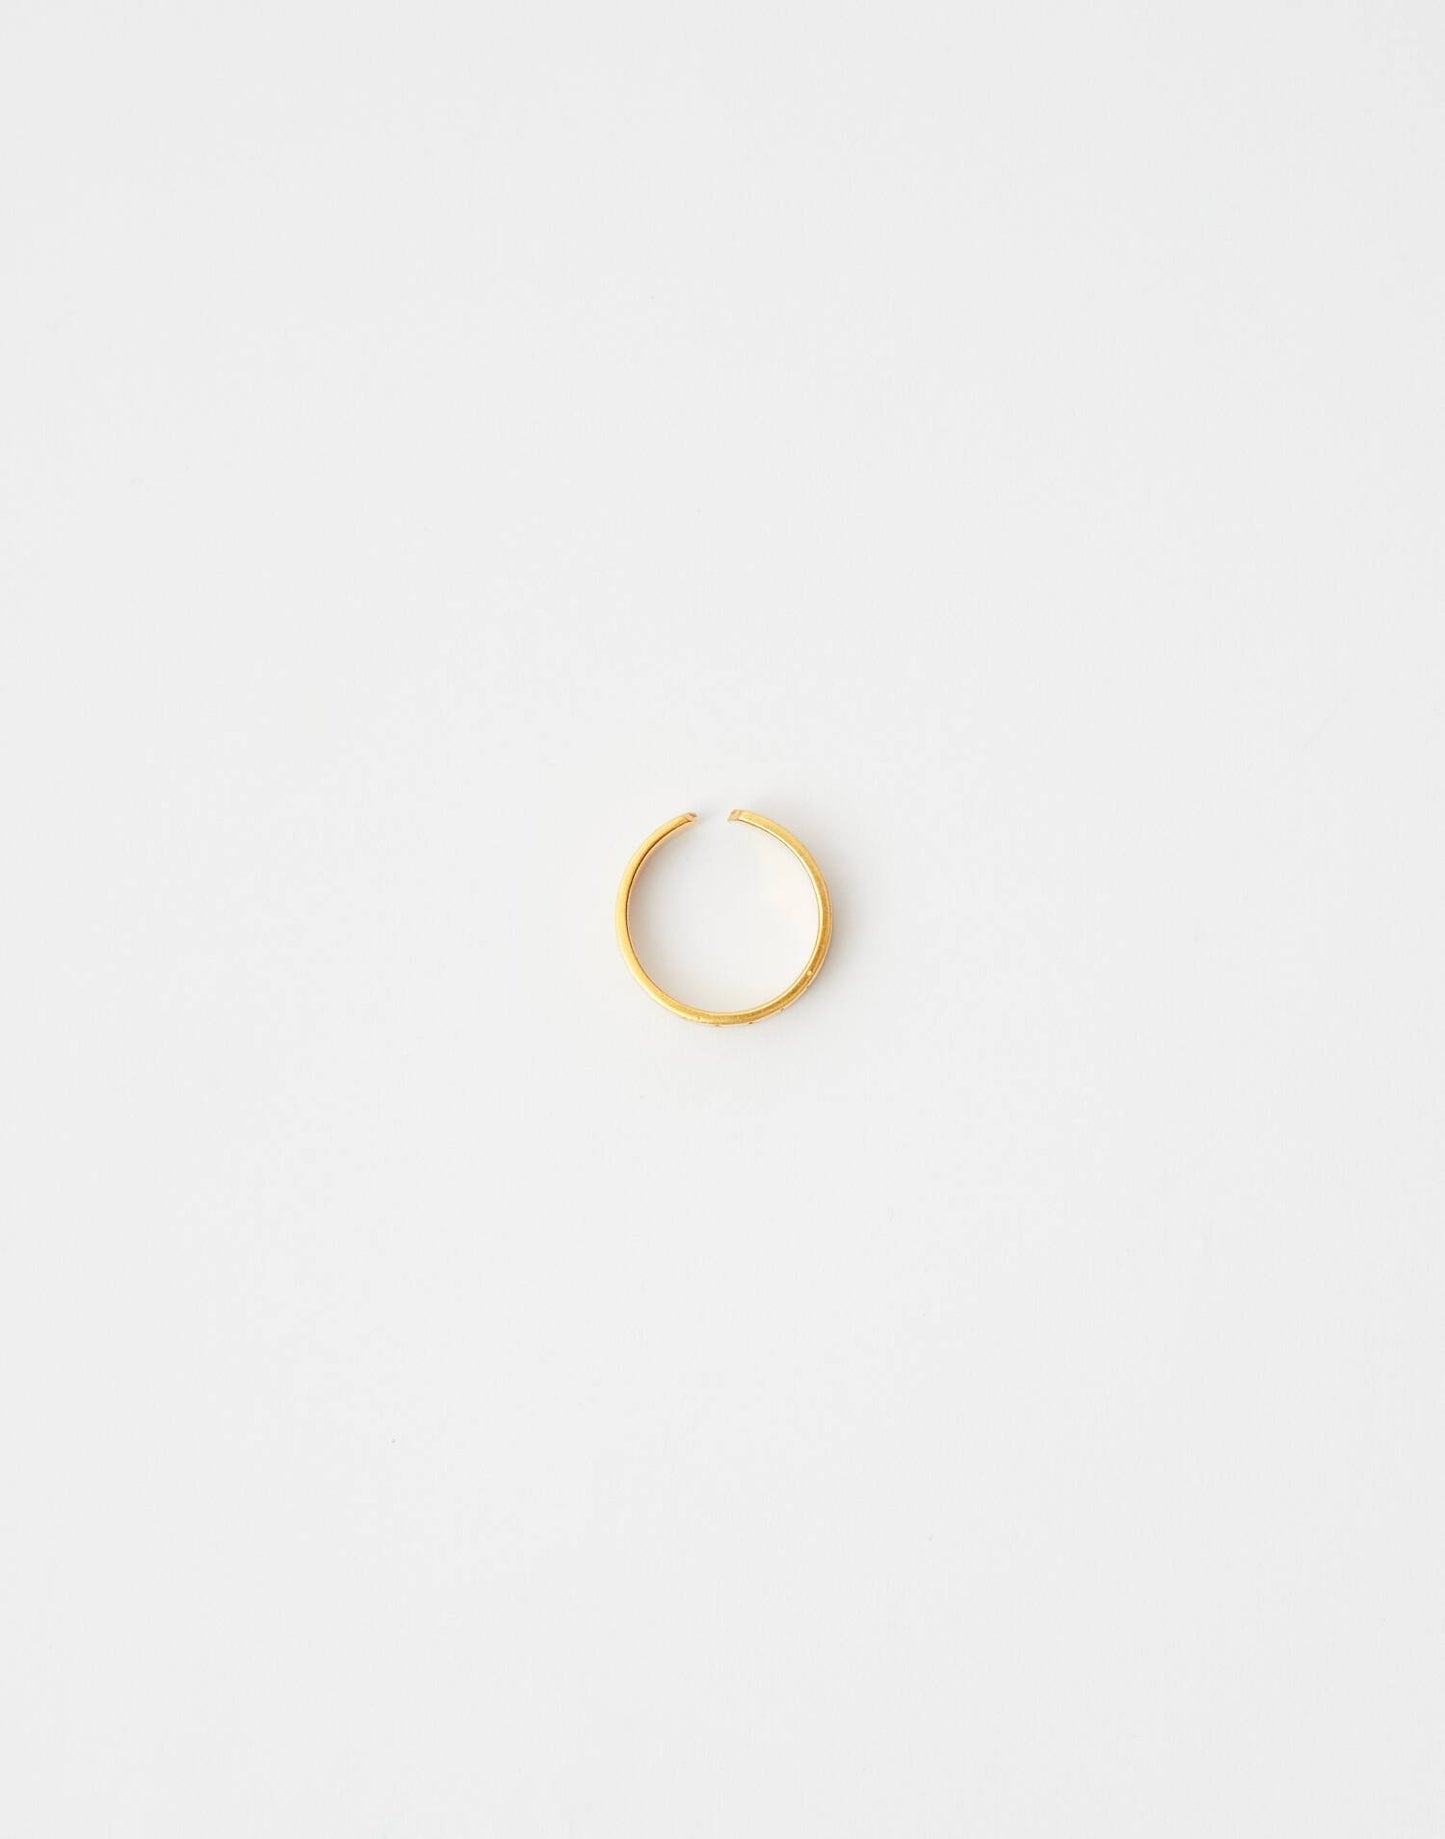 Engraved circle ring